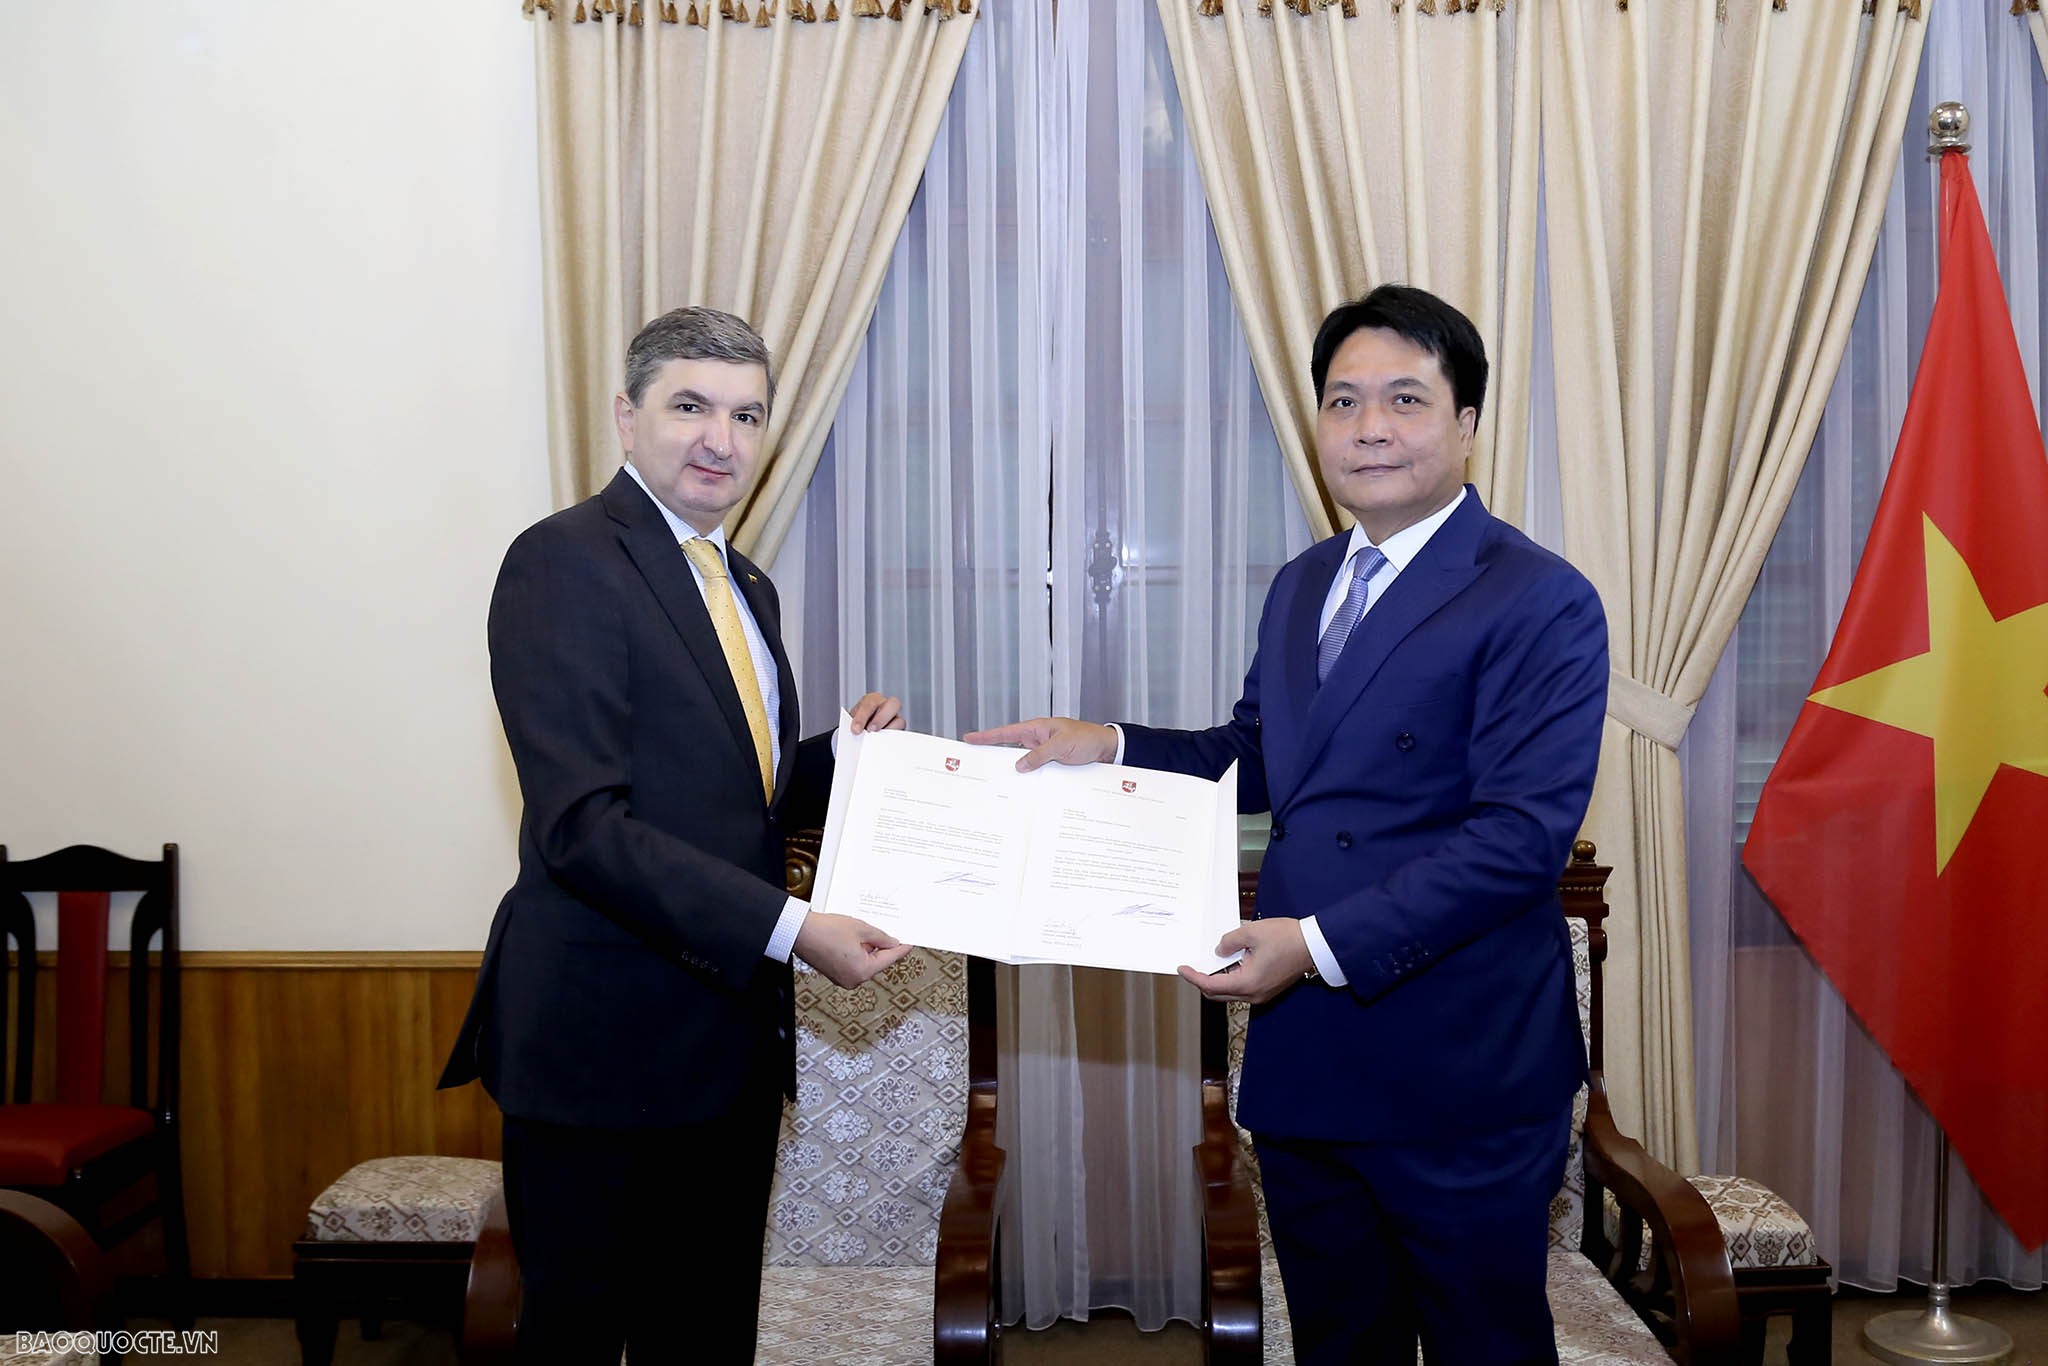 Bộ Ngoại giao tiếp nhận bản sao Thư ủy nhiệm bổ nhiệm Đại sứ Lithuania và Bulgaria tại Việt Nam